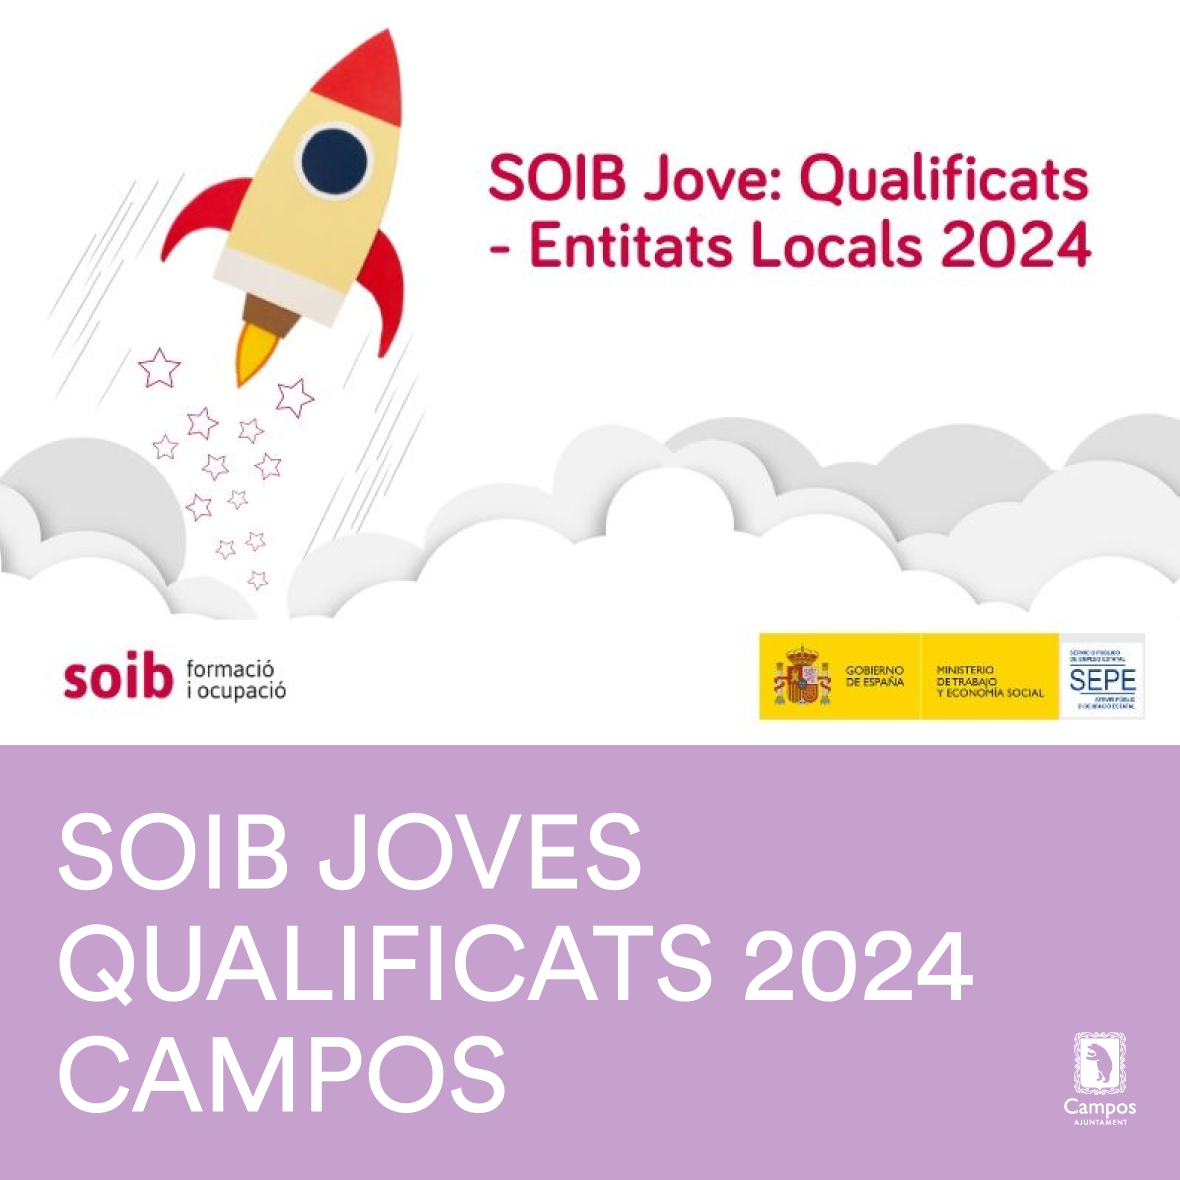 SOIB Jove: Qualificats – Entitats Locals 2024 | Campos